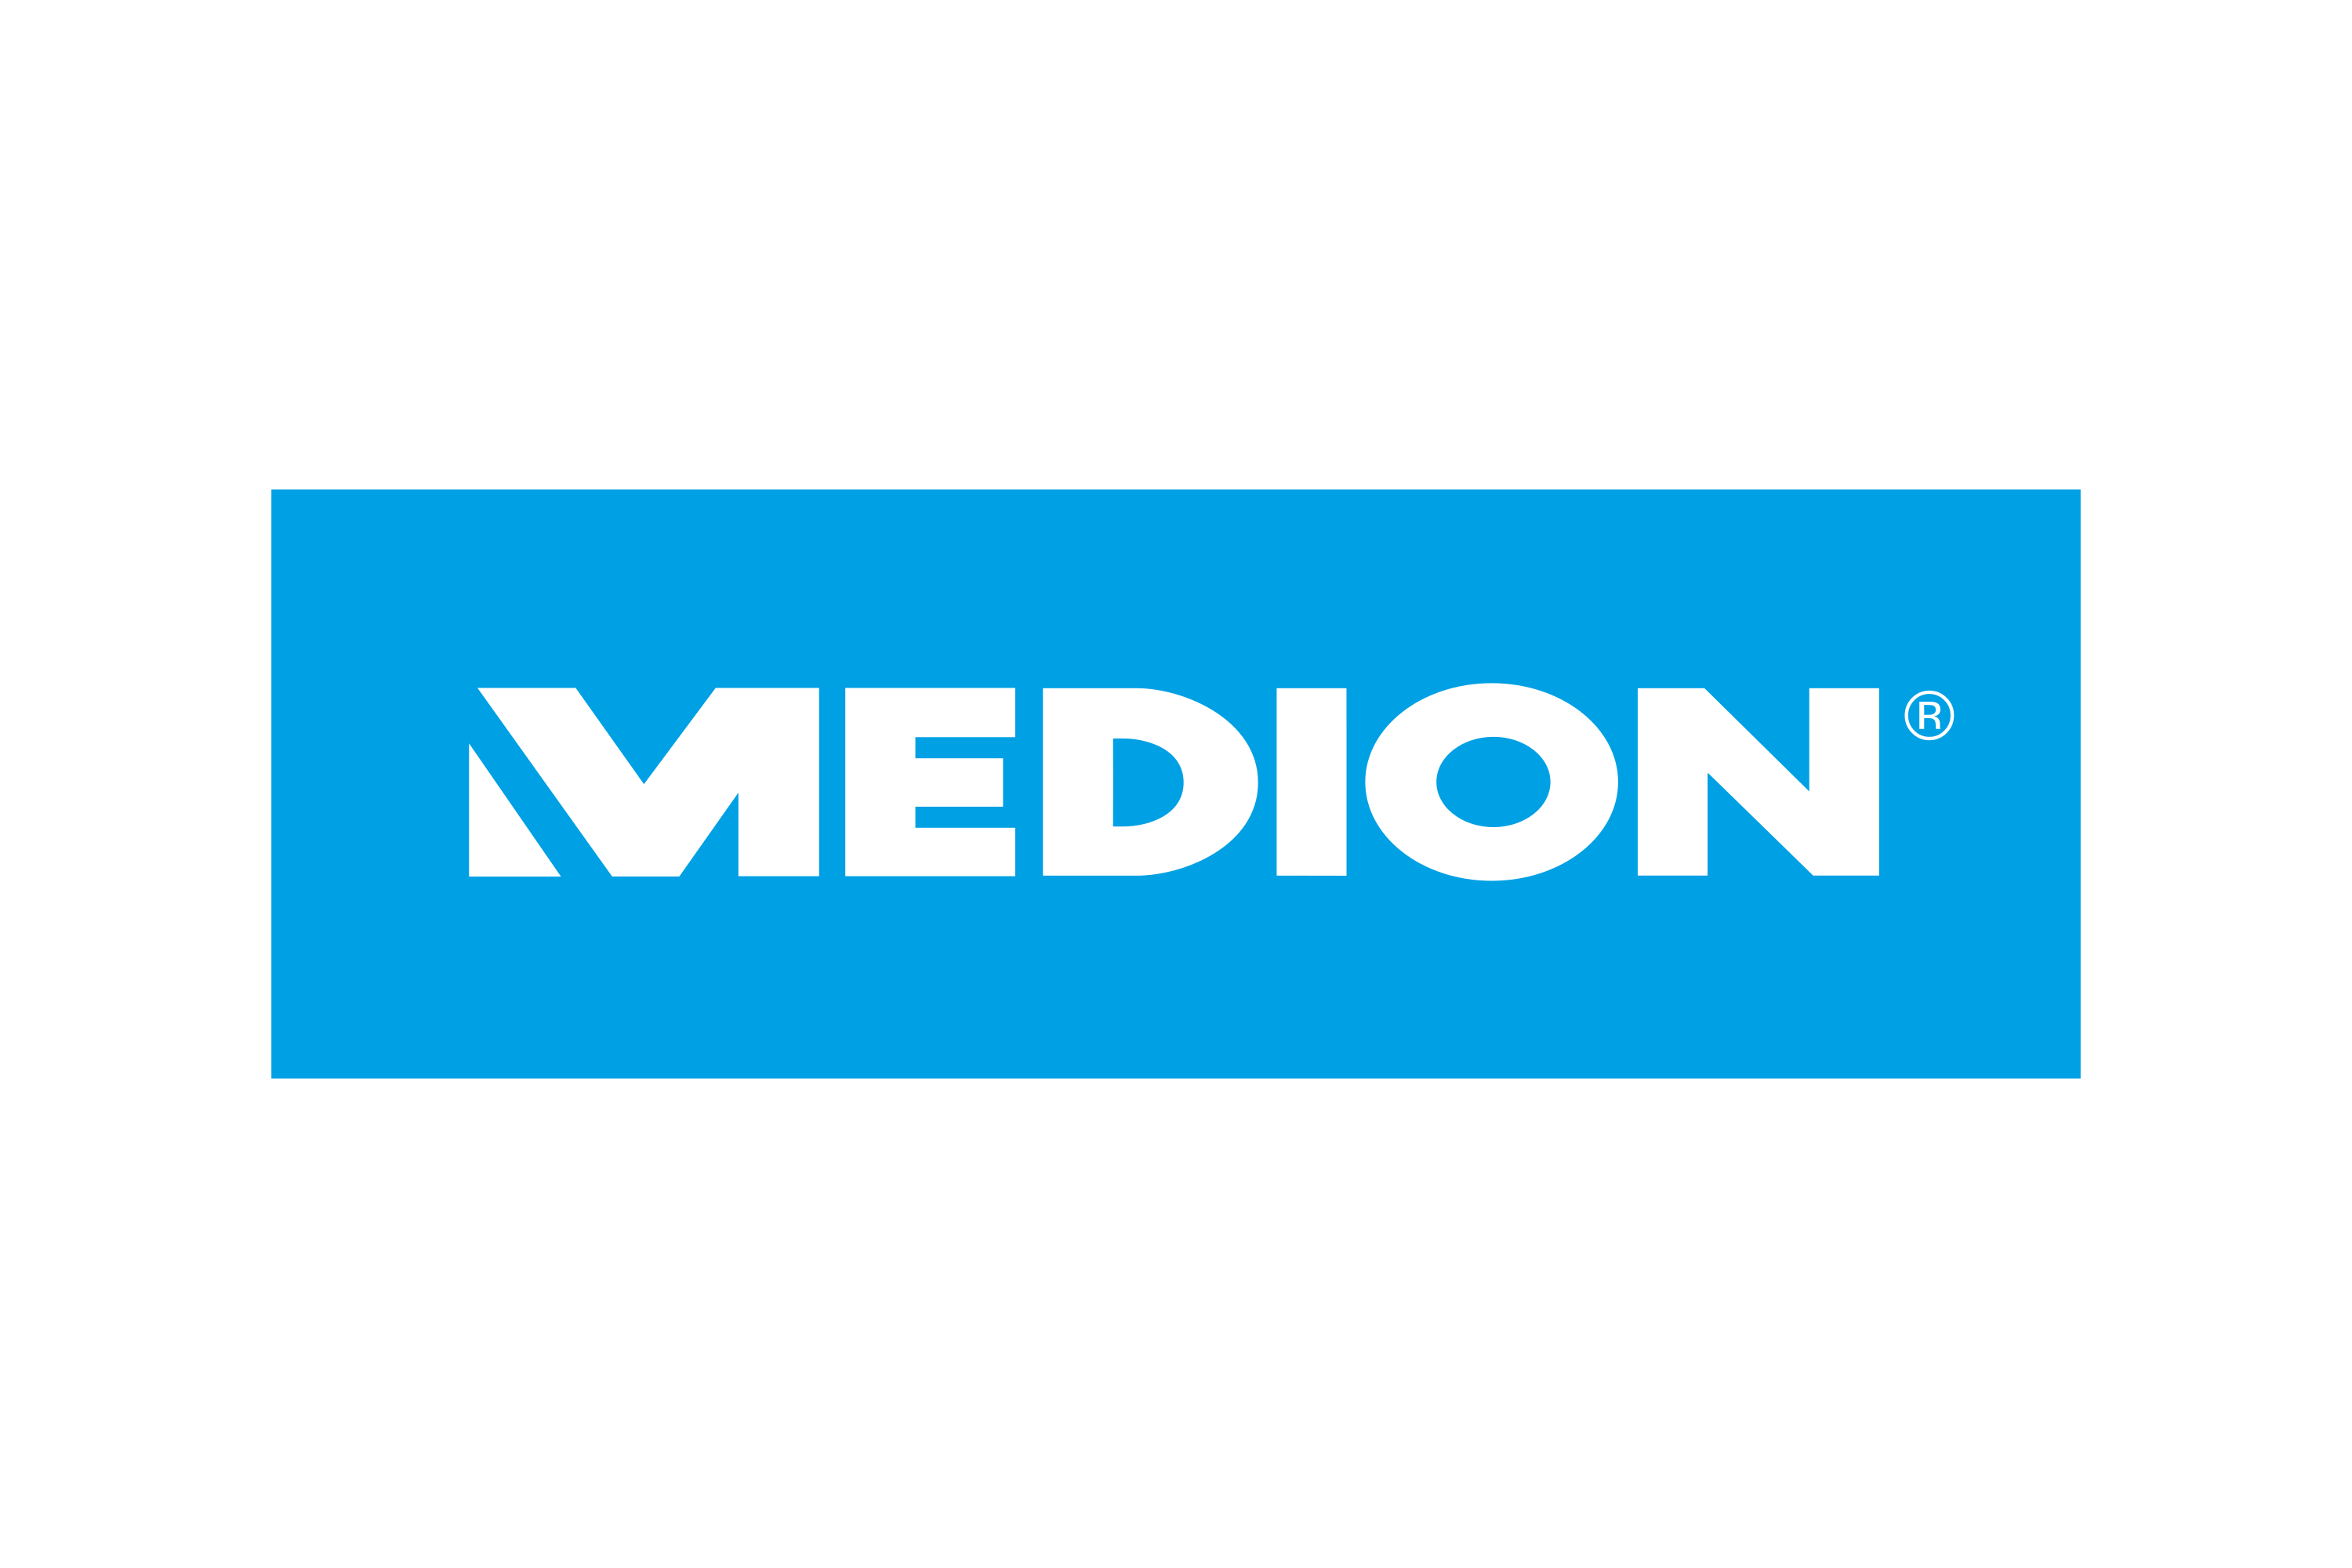 Download Medion Logo in SVG Vector or PNG File Format 